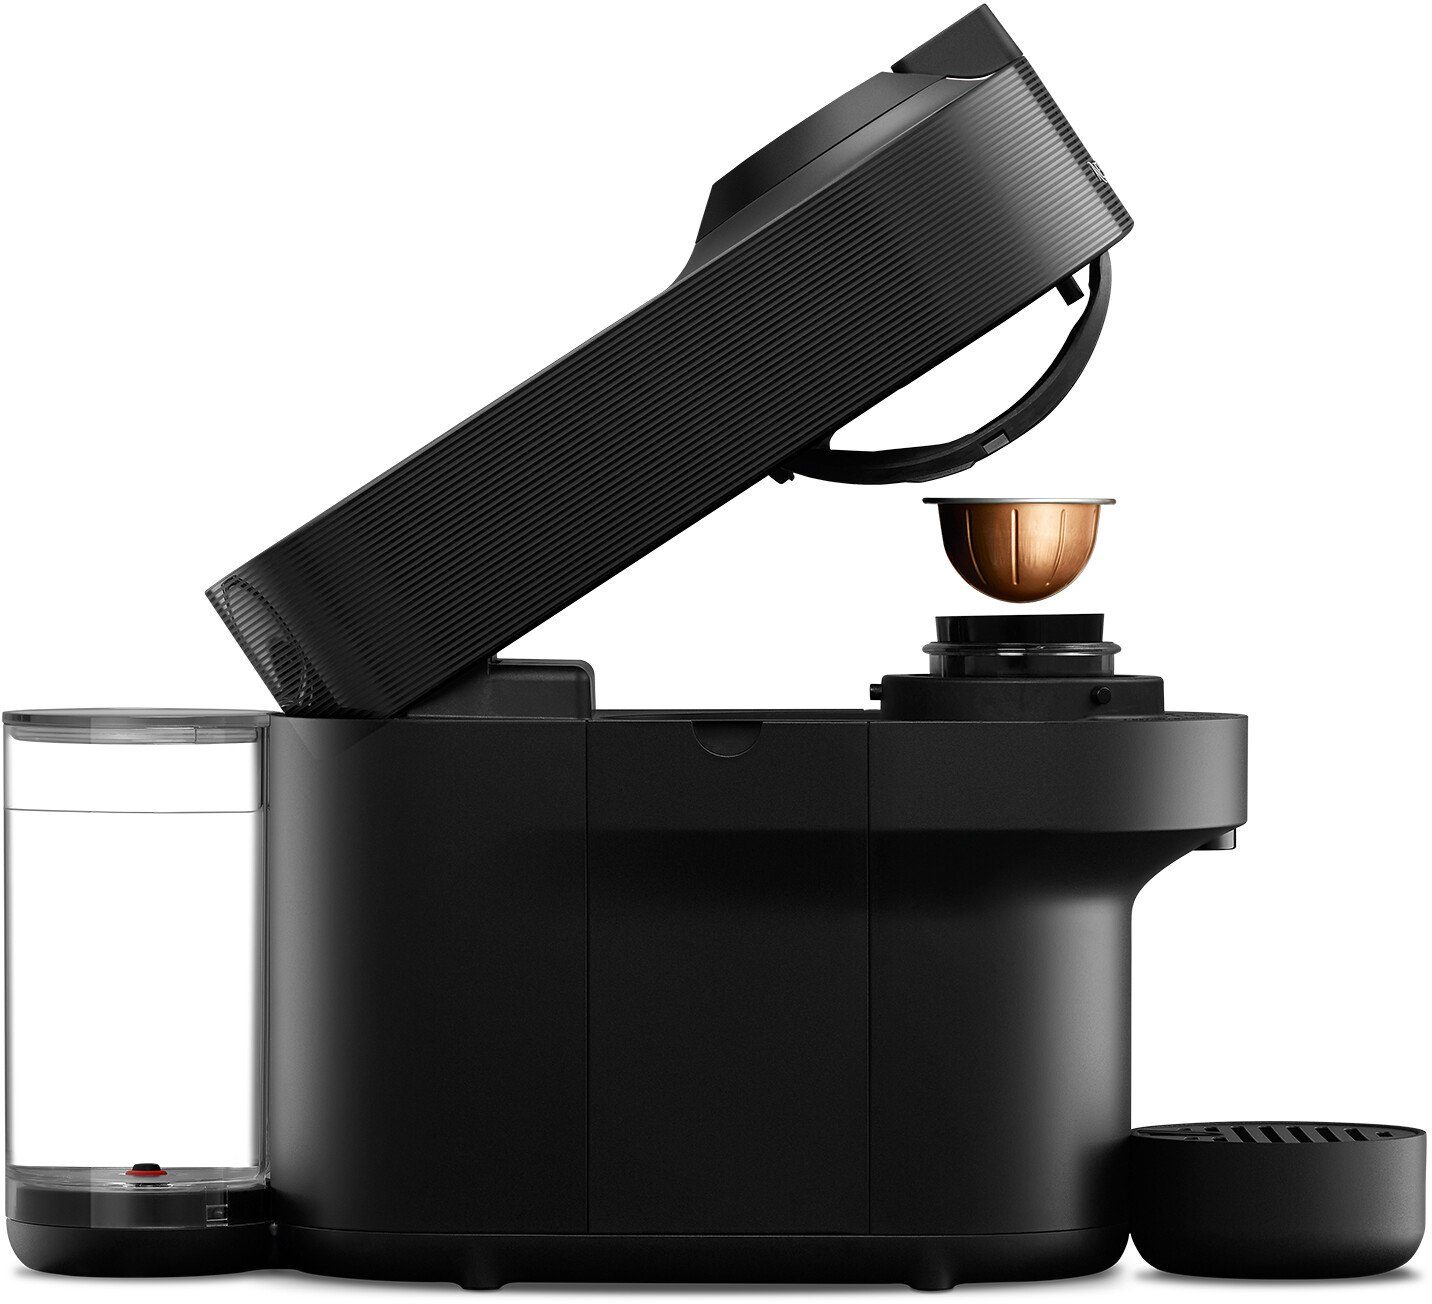 Nespresso Kapselmaschine Vertuo Pop ENV90.B von DeLonghi, inkl. Aeroccino Milchaufschäumer im Wert von 75,- UVP